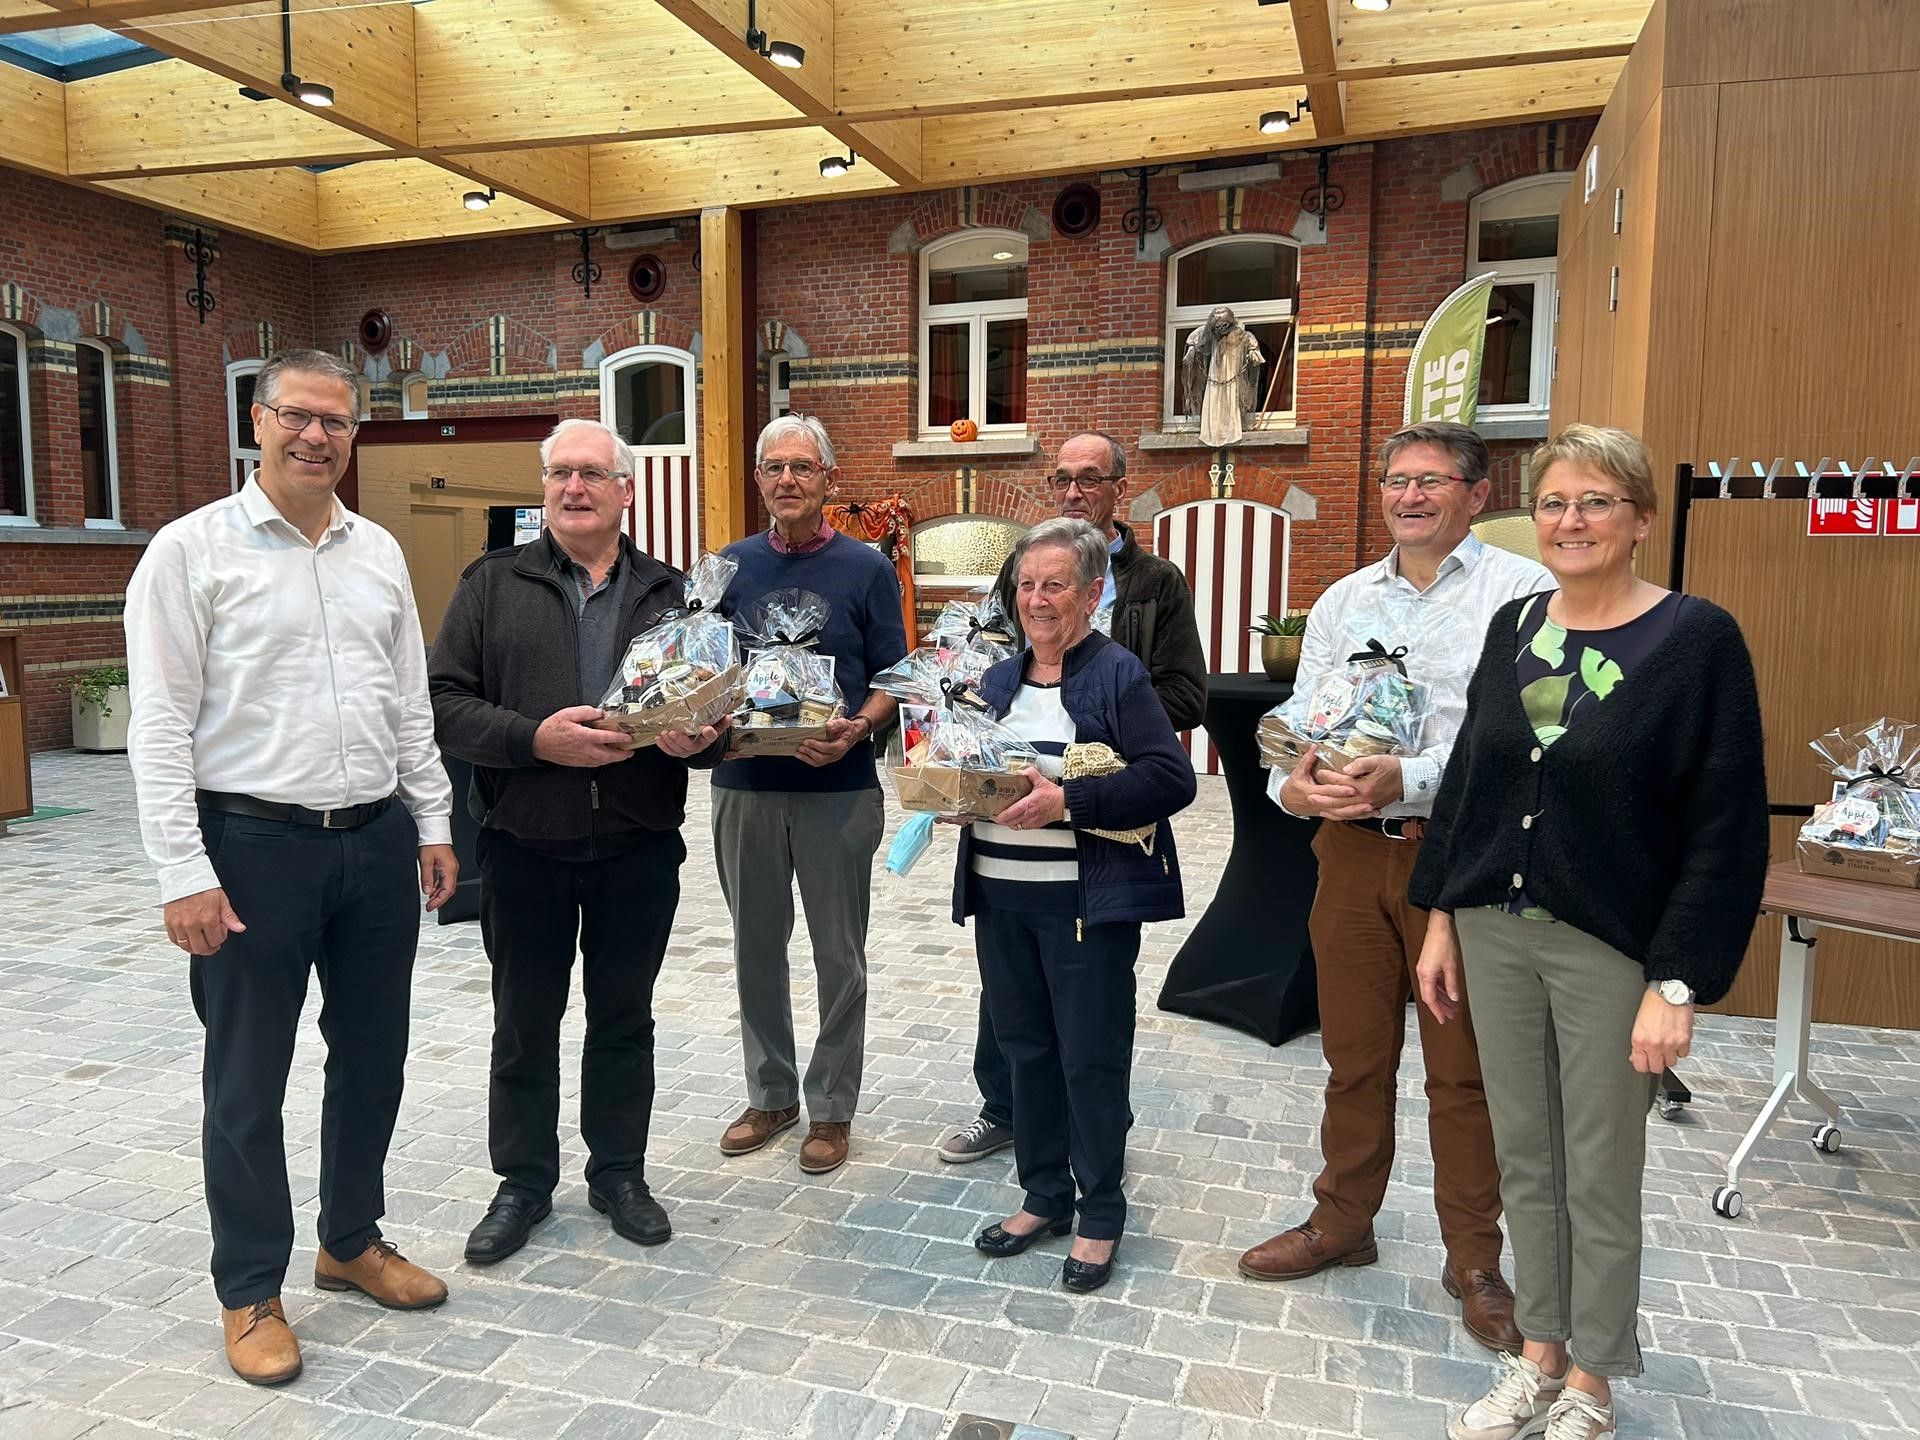 Gedeputeerde Tom Dehaene en schepen Greet Willems schenken een streekproductenpakket aan de 8 vrijwilligers bij de start van de Minder Mobielen Centrale in Kampenhout